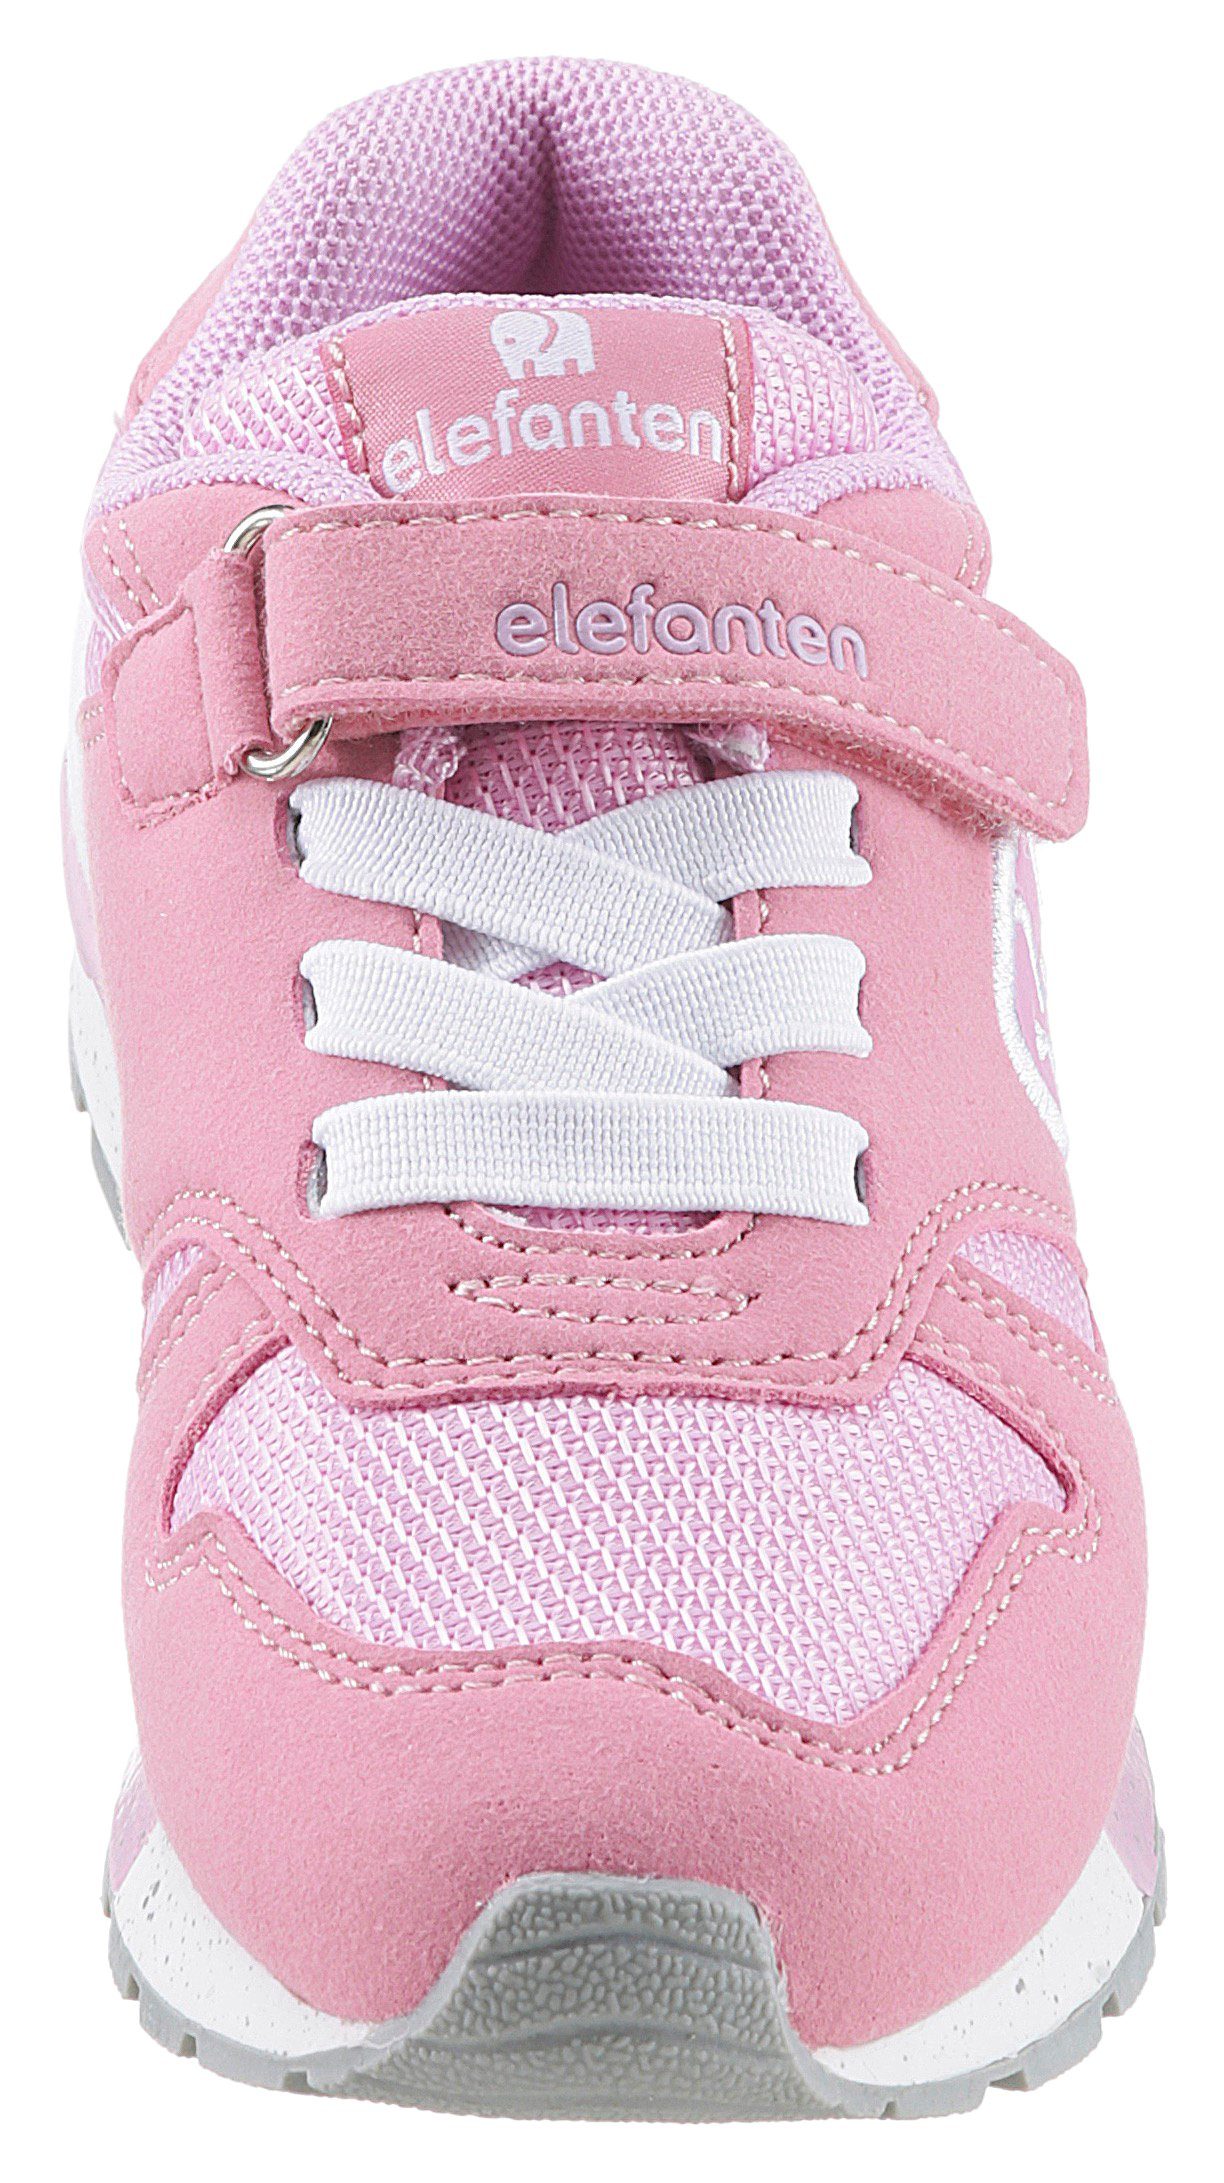 ELEFANTEN Hoppy WMS: Weit Sneaker pink-flieder Foam mit Memory weichem